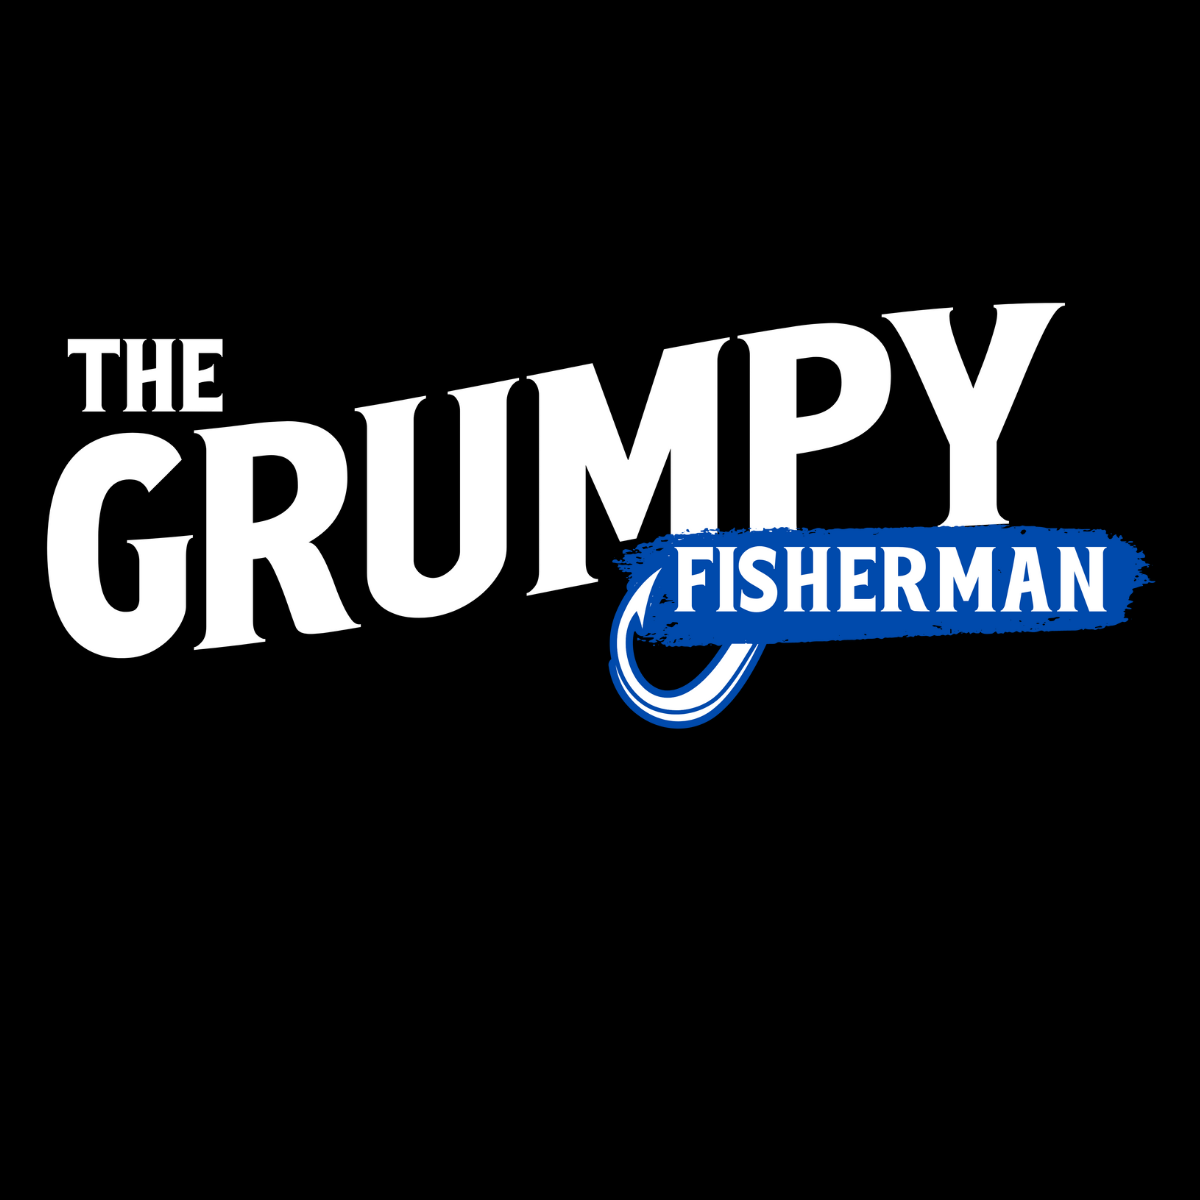 The Grumpy Fisherman Tee